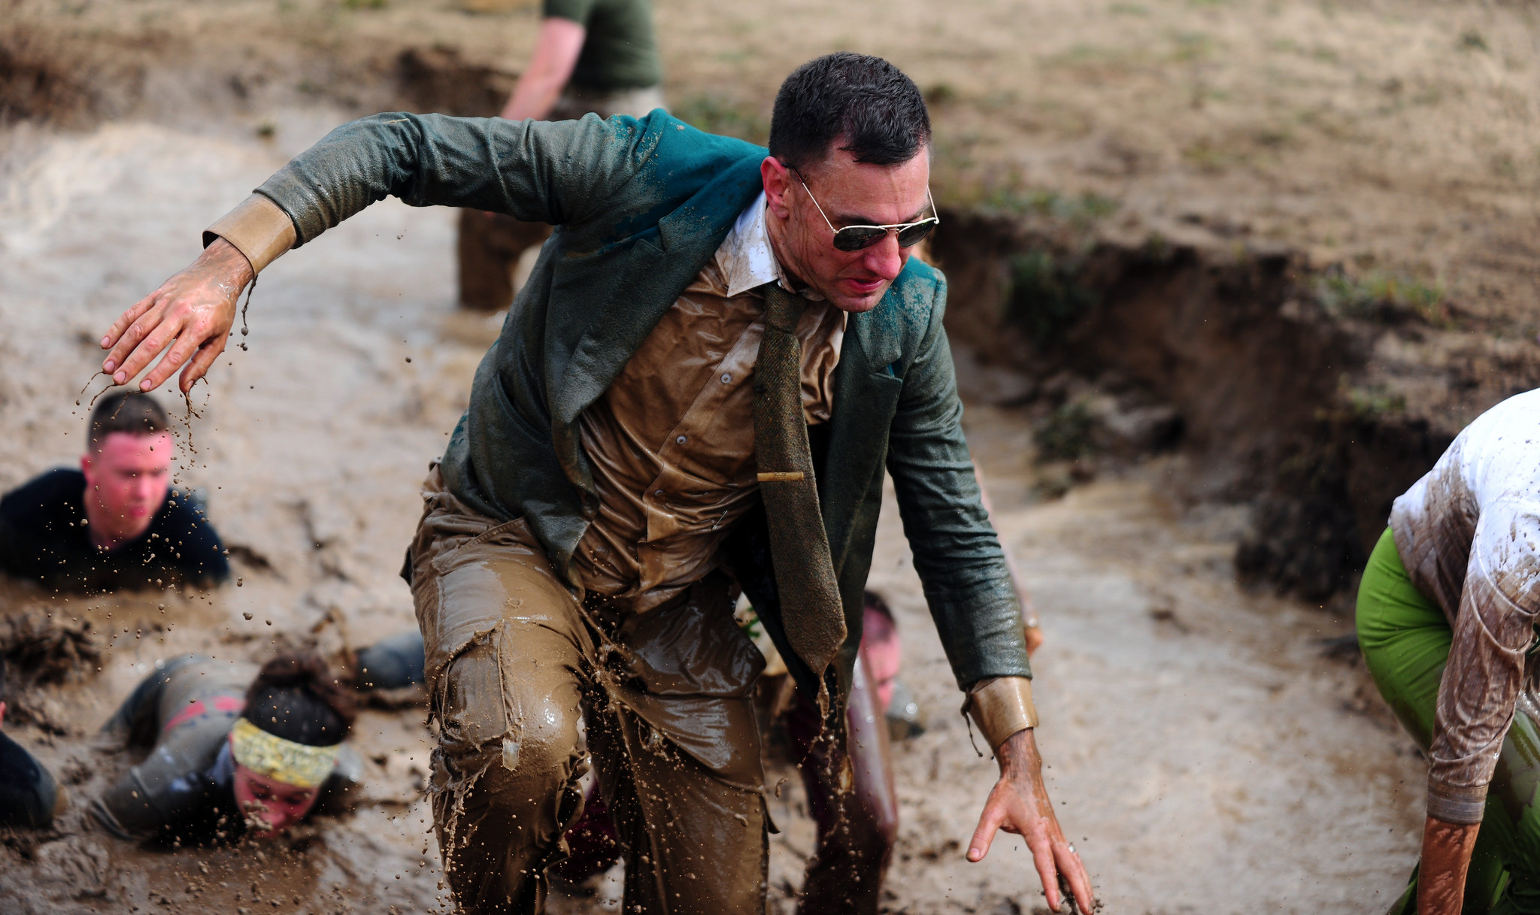 A mud run